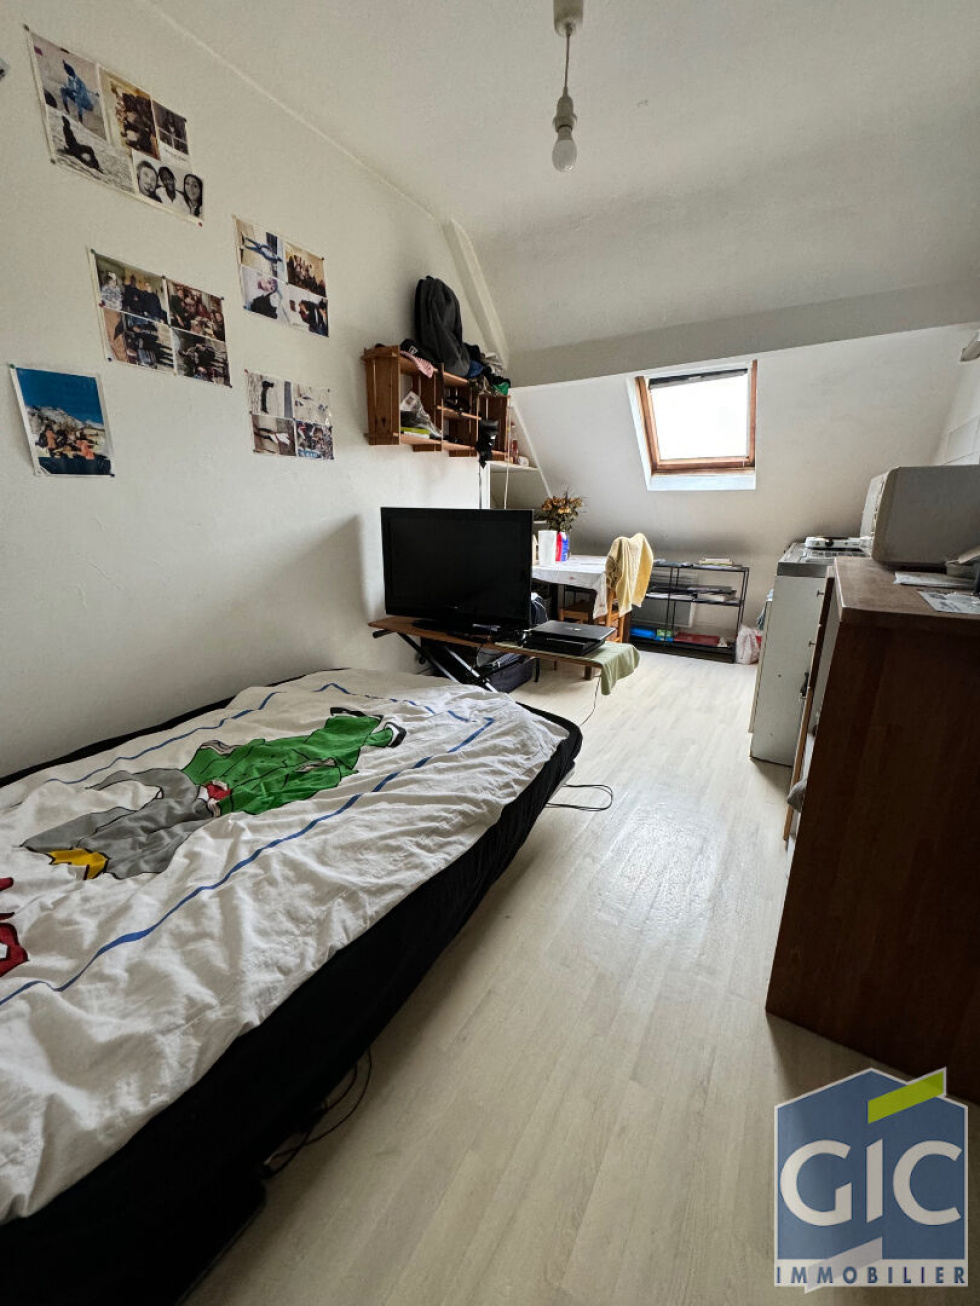 Vente Appartement 13m² 1 Pièce à Caen (14000) - Cabinet Immobilier Saibt-Martin